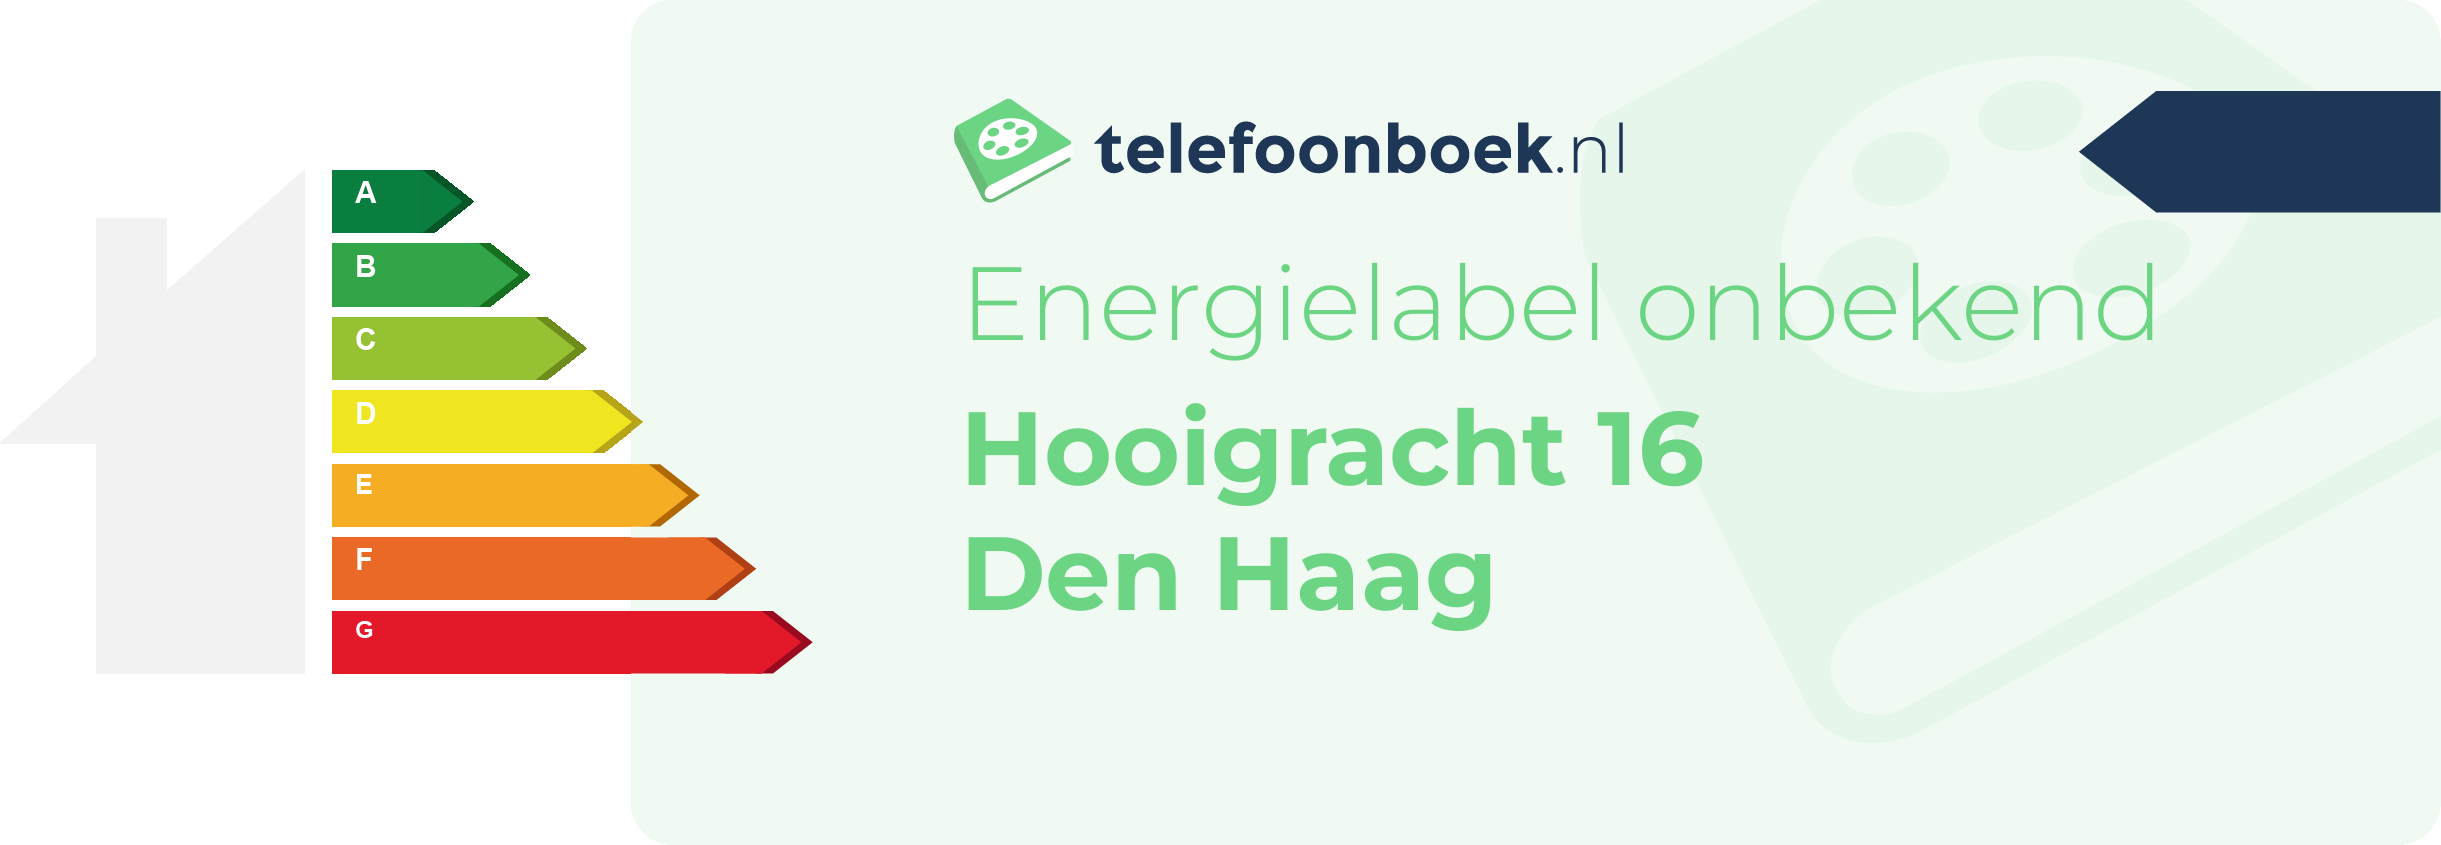 Energielabel Hooigracht 16 Den Haag